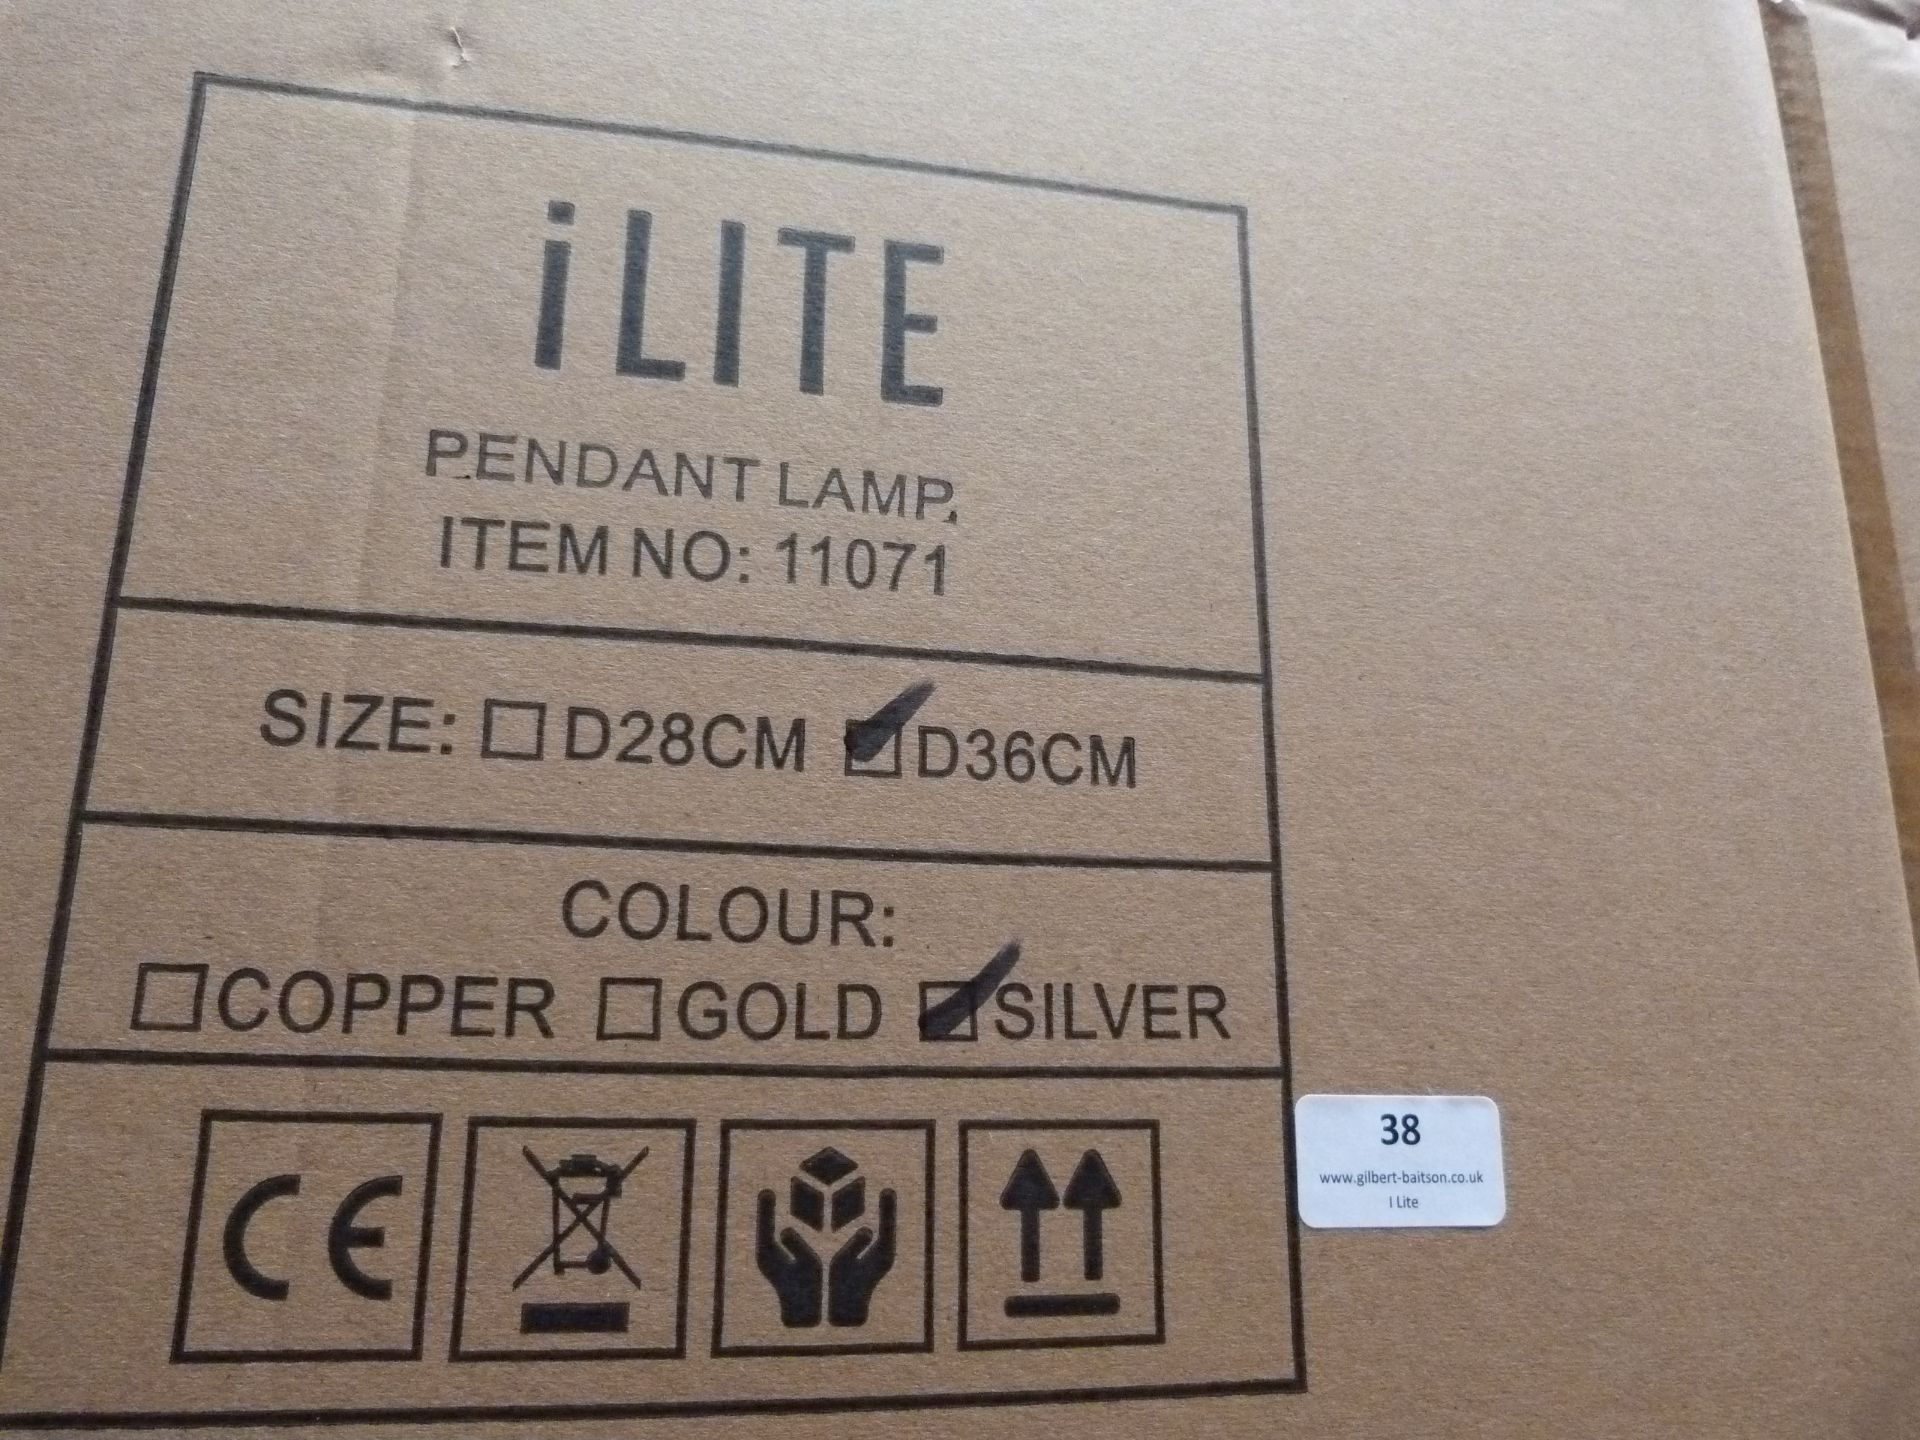 *24 ILite Pendant Lamps Item No.11071, Size: D36CM (silver) - Image 3 of 4